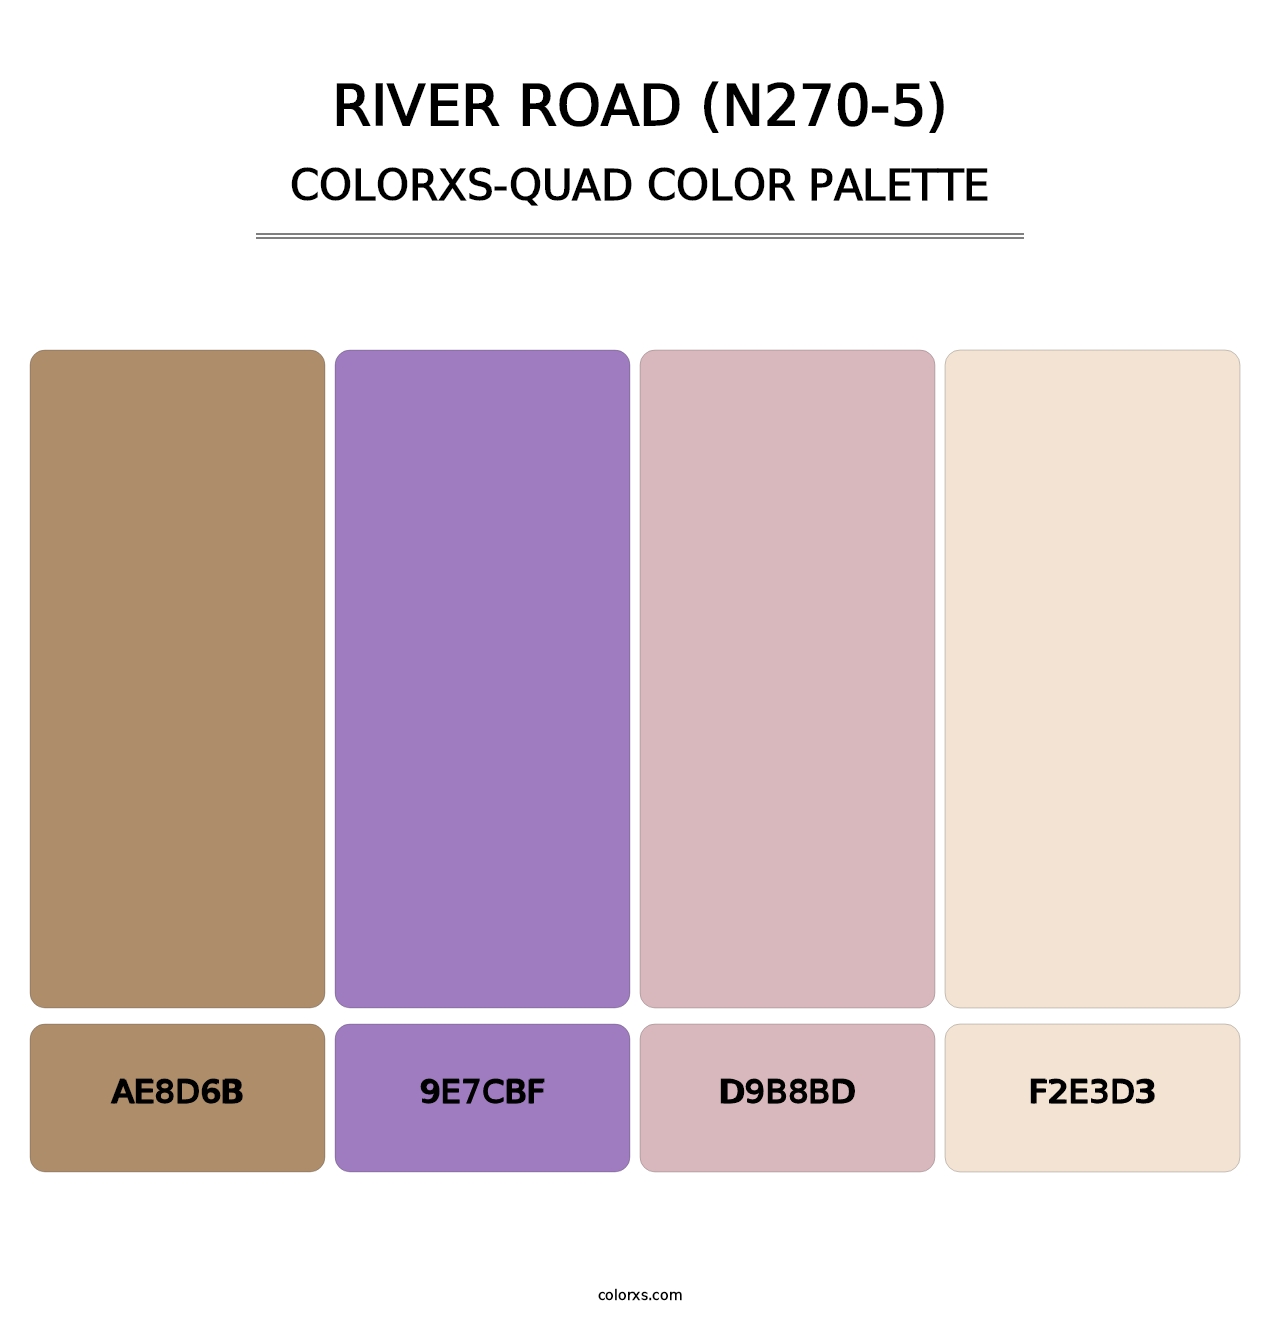 River Road (N270-5) - Colorxs Quad Palette